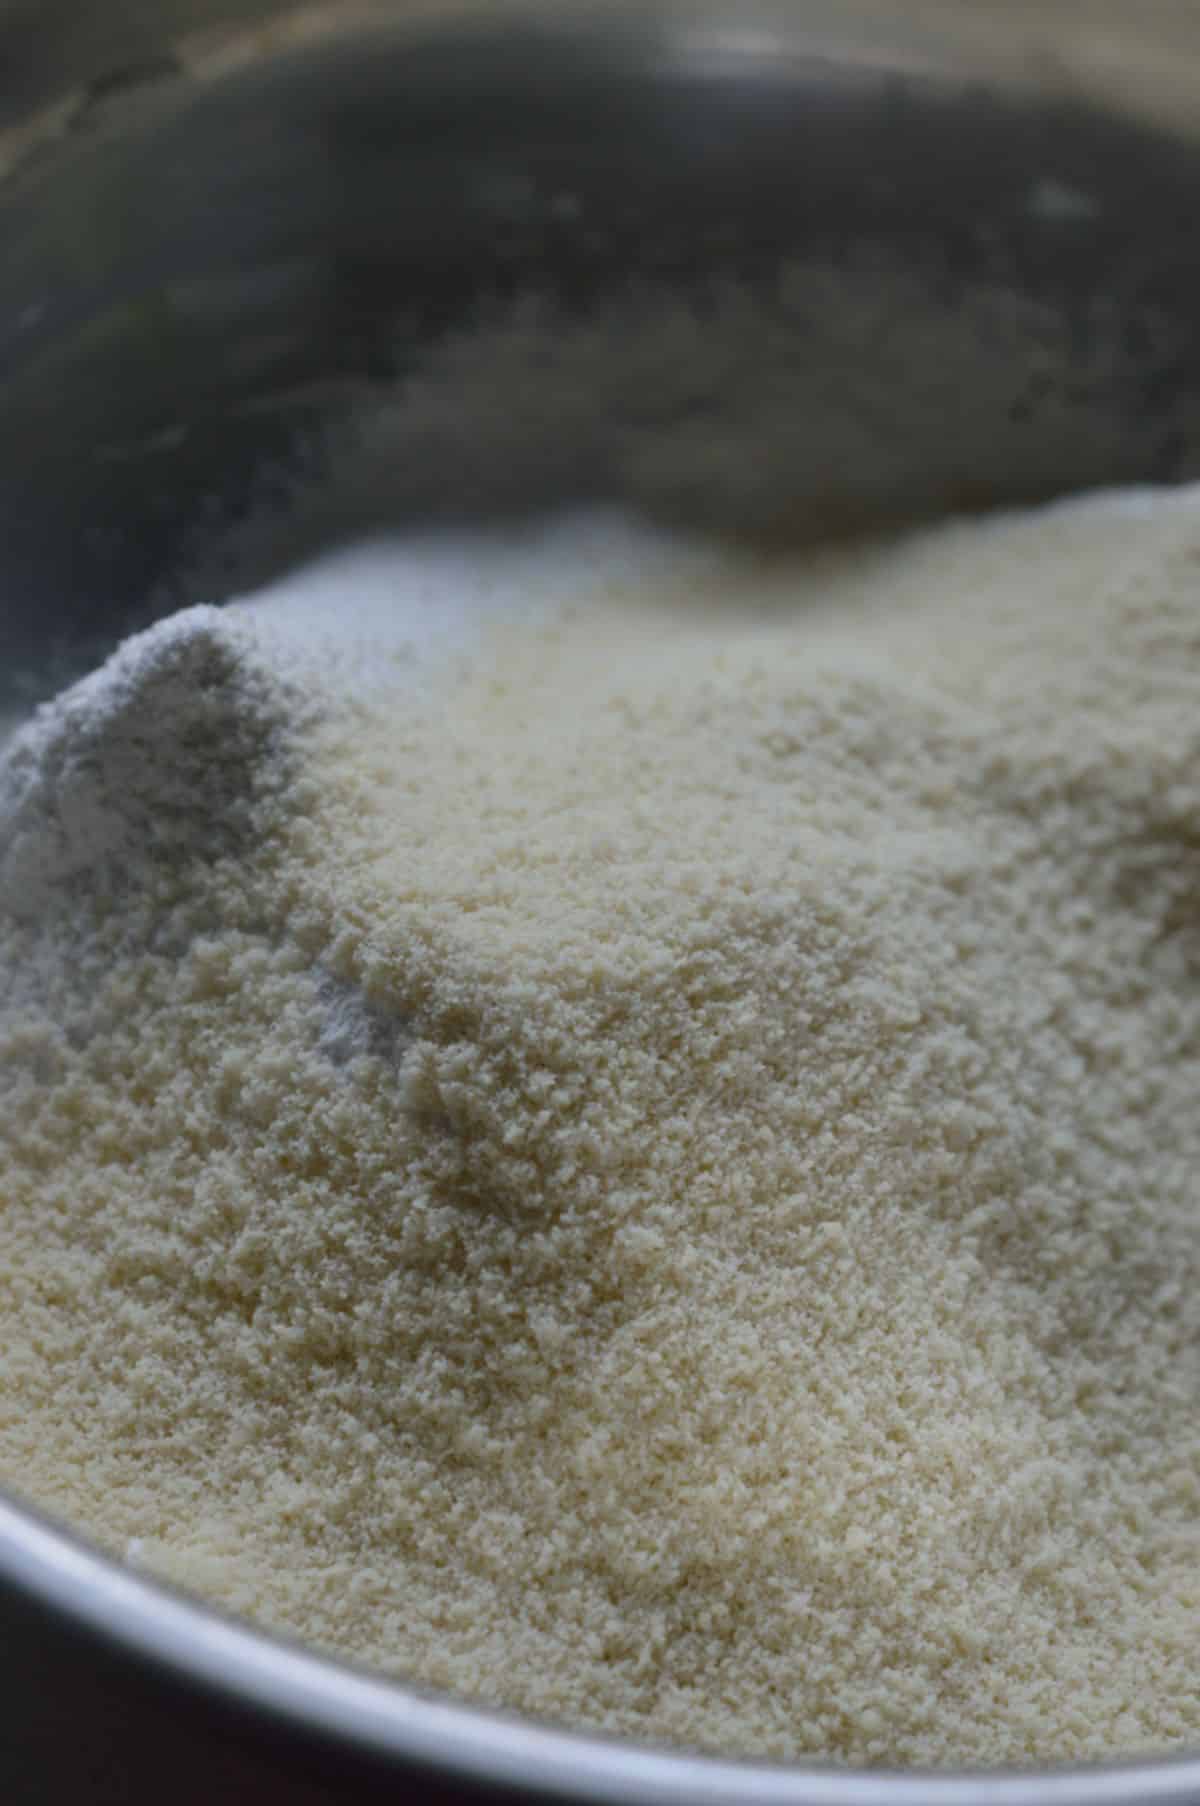 Almond flour, powdered sugar, baking powder, and cardamom powder in a bowl.